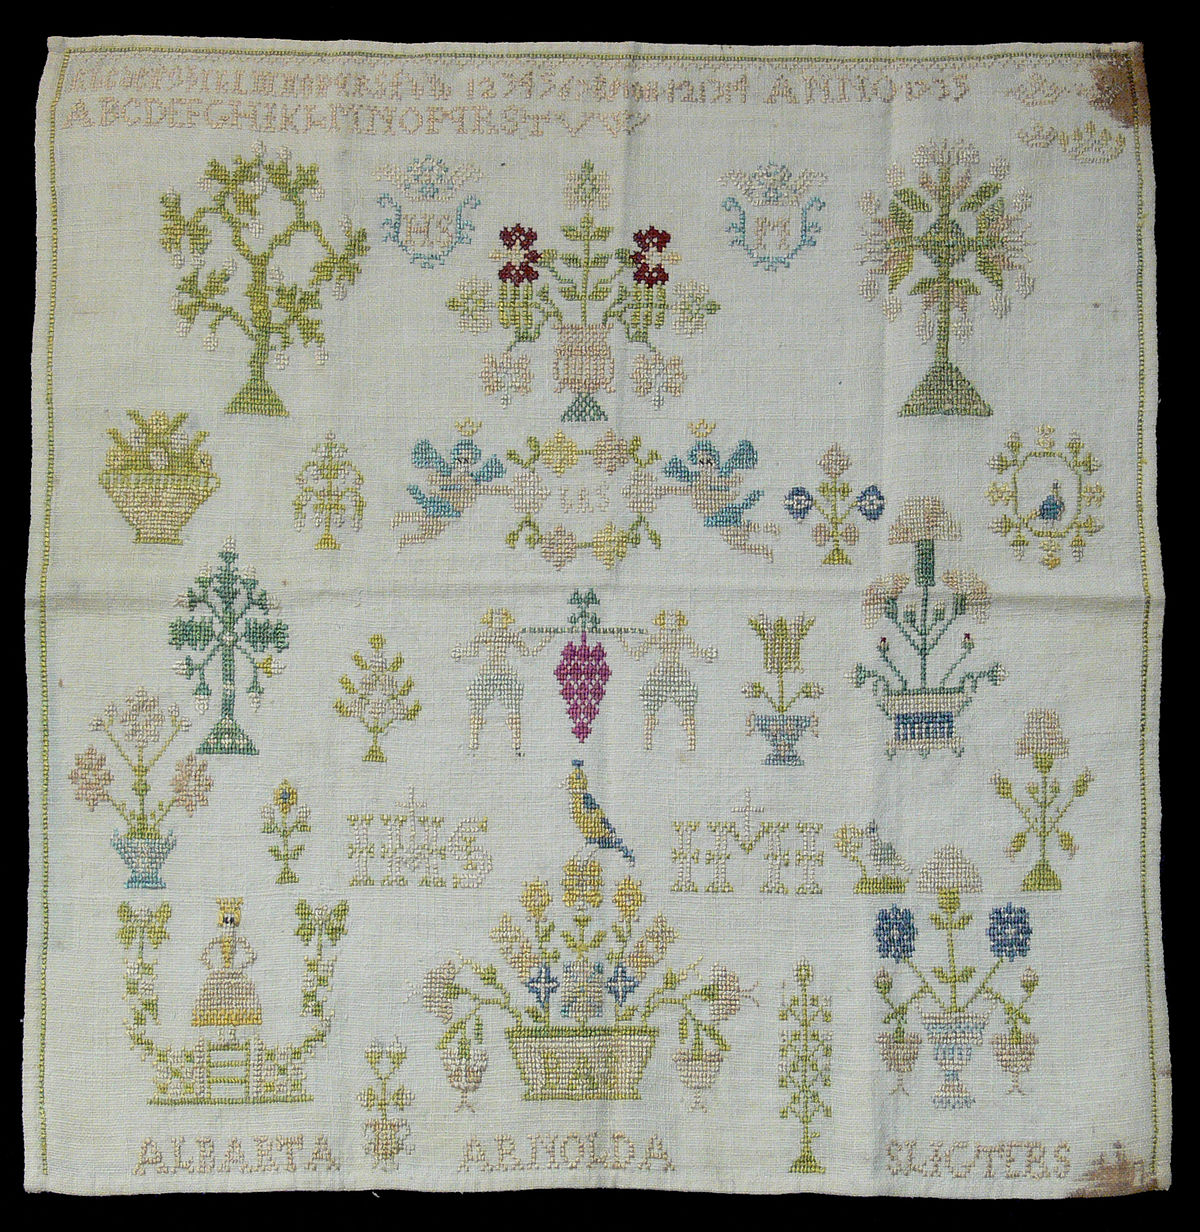 Irish Embroidery Patterns Cross Stitch Wikipedia